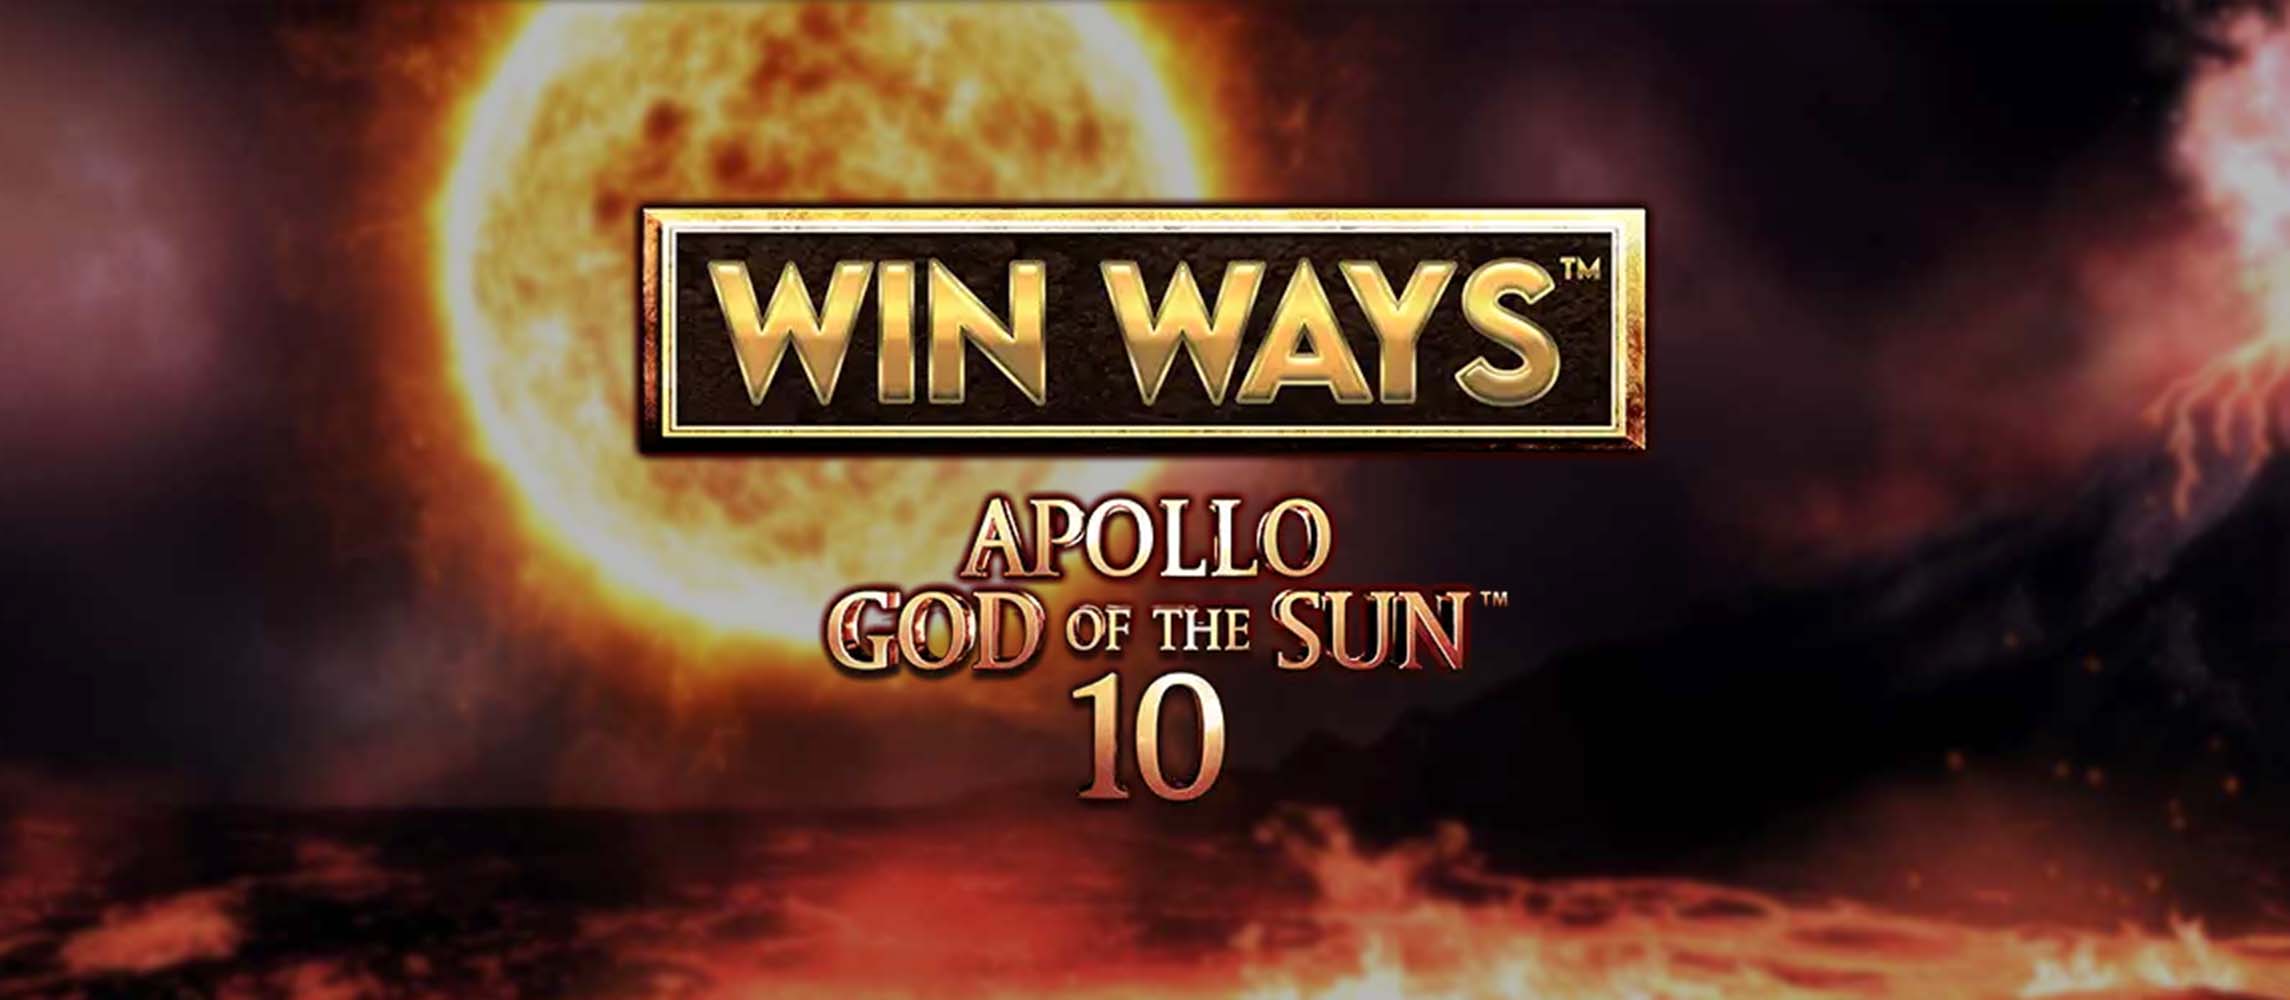 Apollo God of the Sun 10: Win Ways